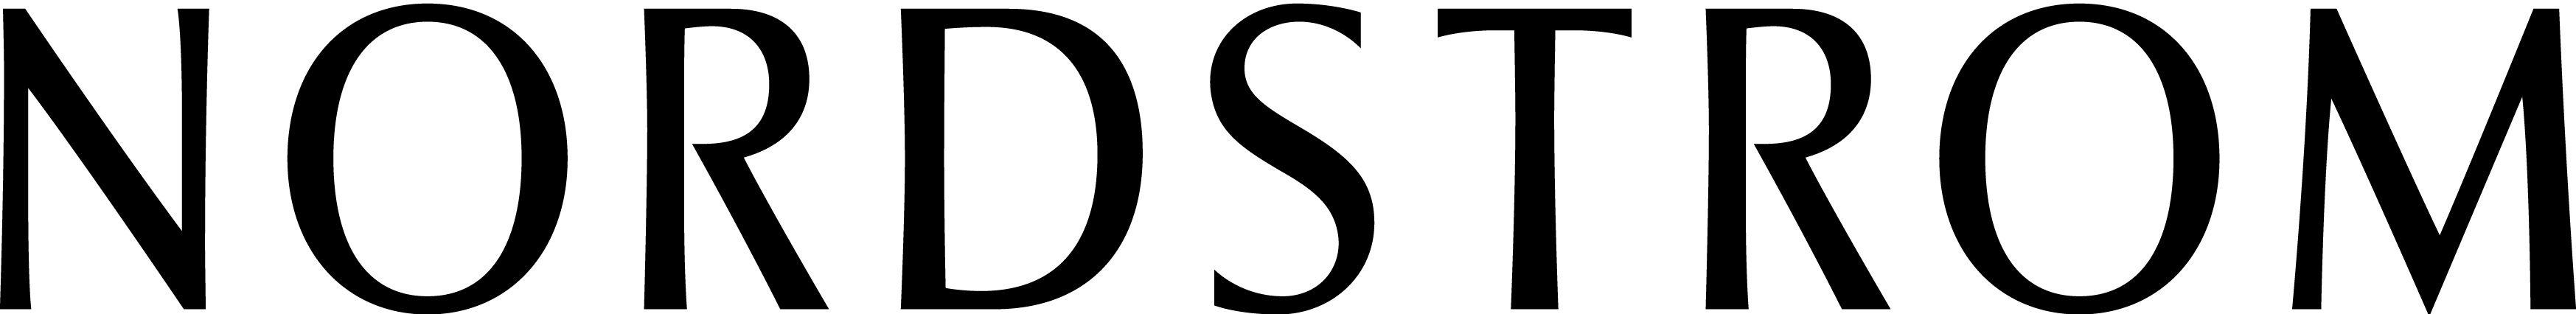 Nordstrom Official Logo - Nordstrom Logos